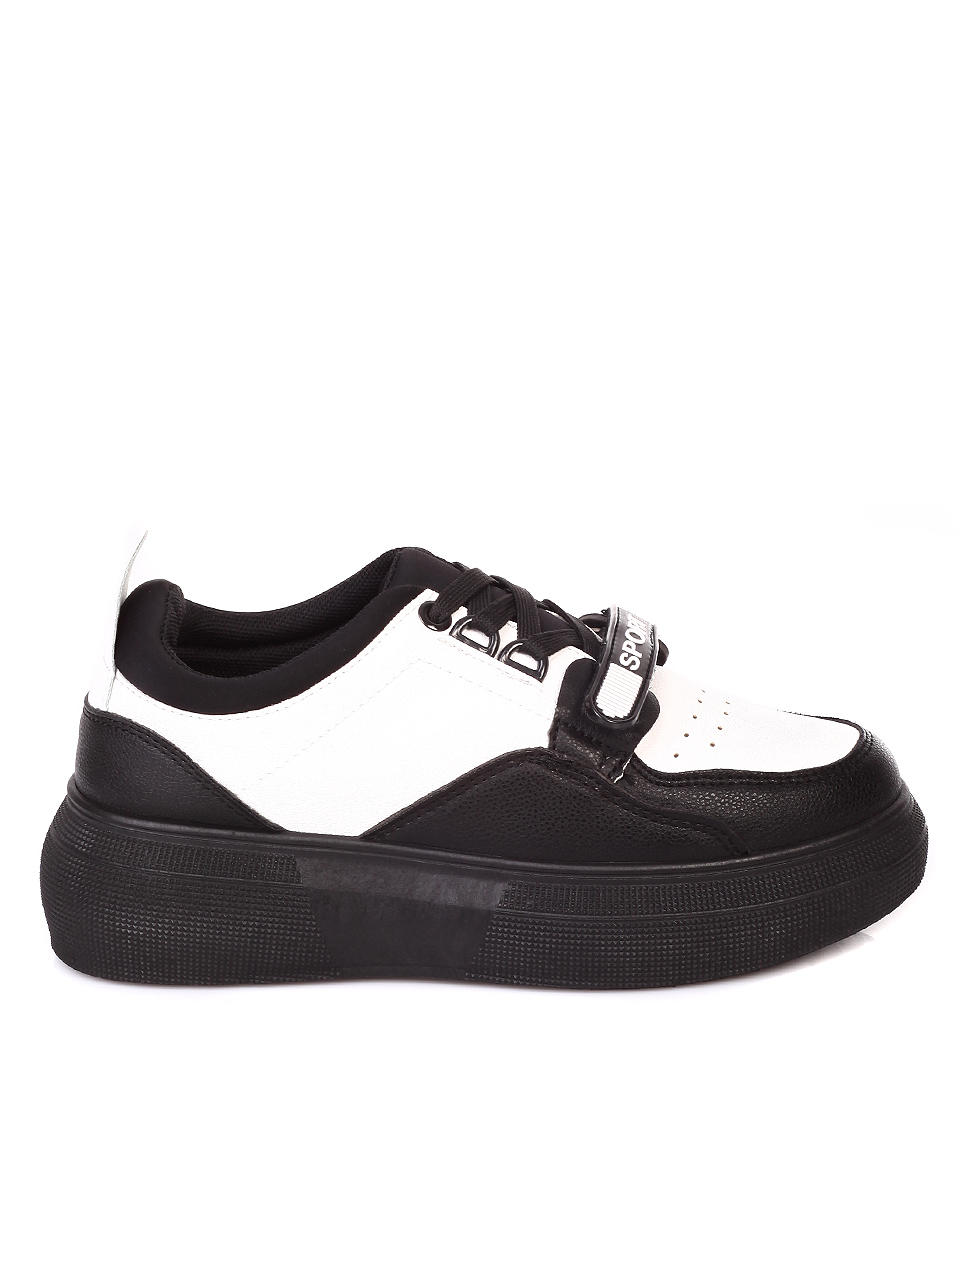 Ежедневни дамски обувки на платформа в черно и бяло 3U-19854 black/white